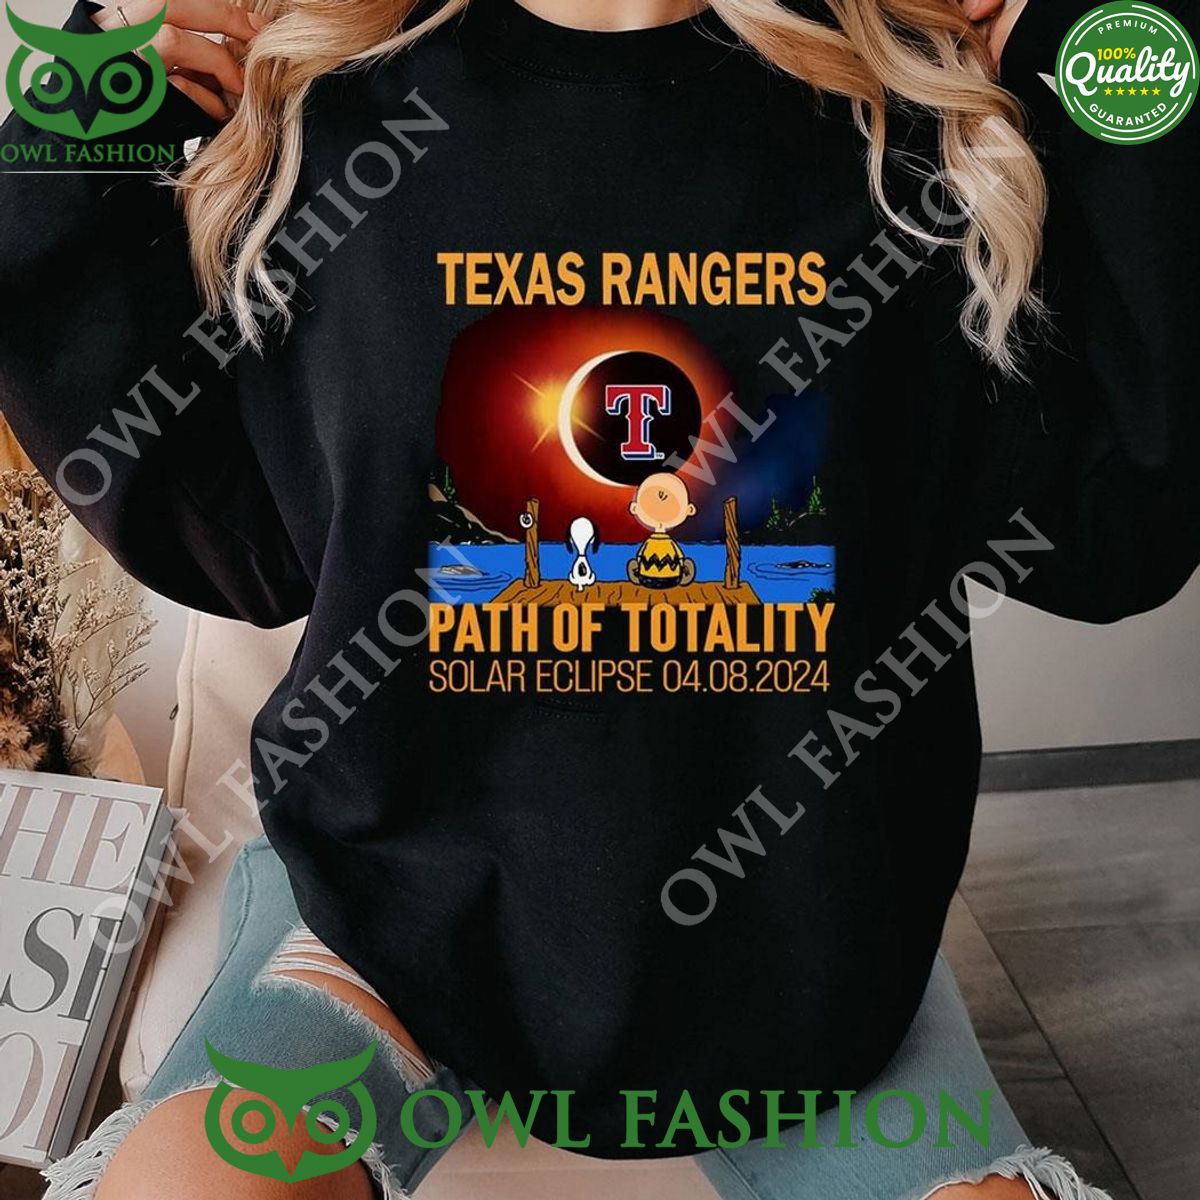 texas rangers path of totality solar eclipse 2024 shirt hoodie ladies tee 1 whwTU.jpg